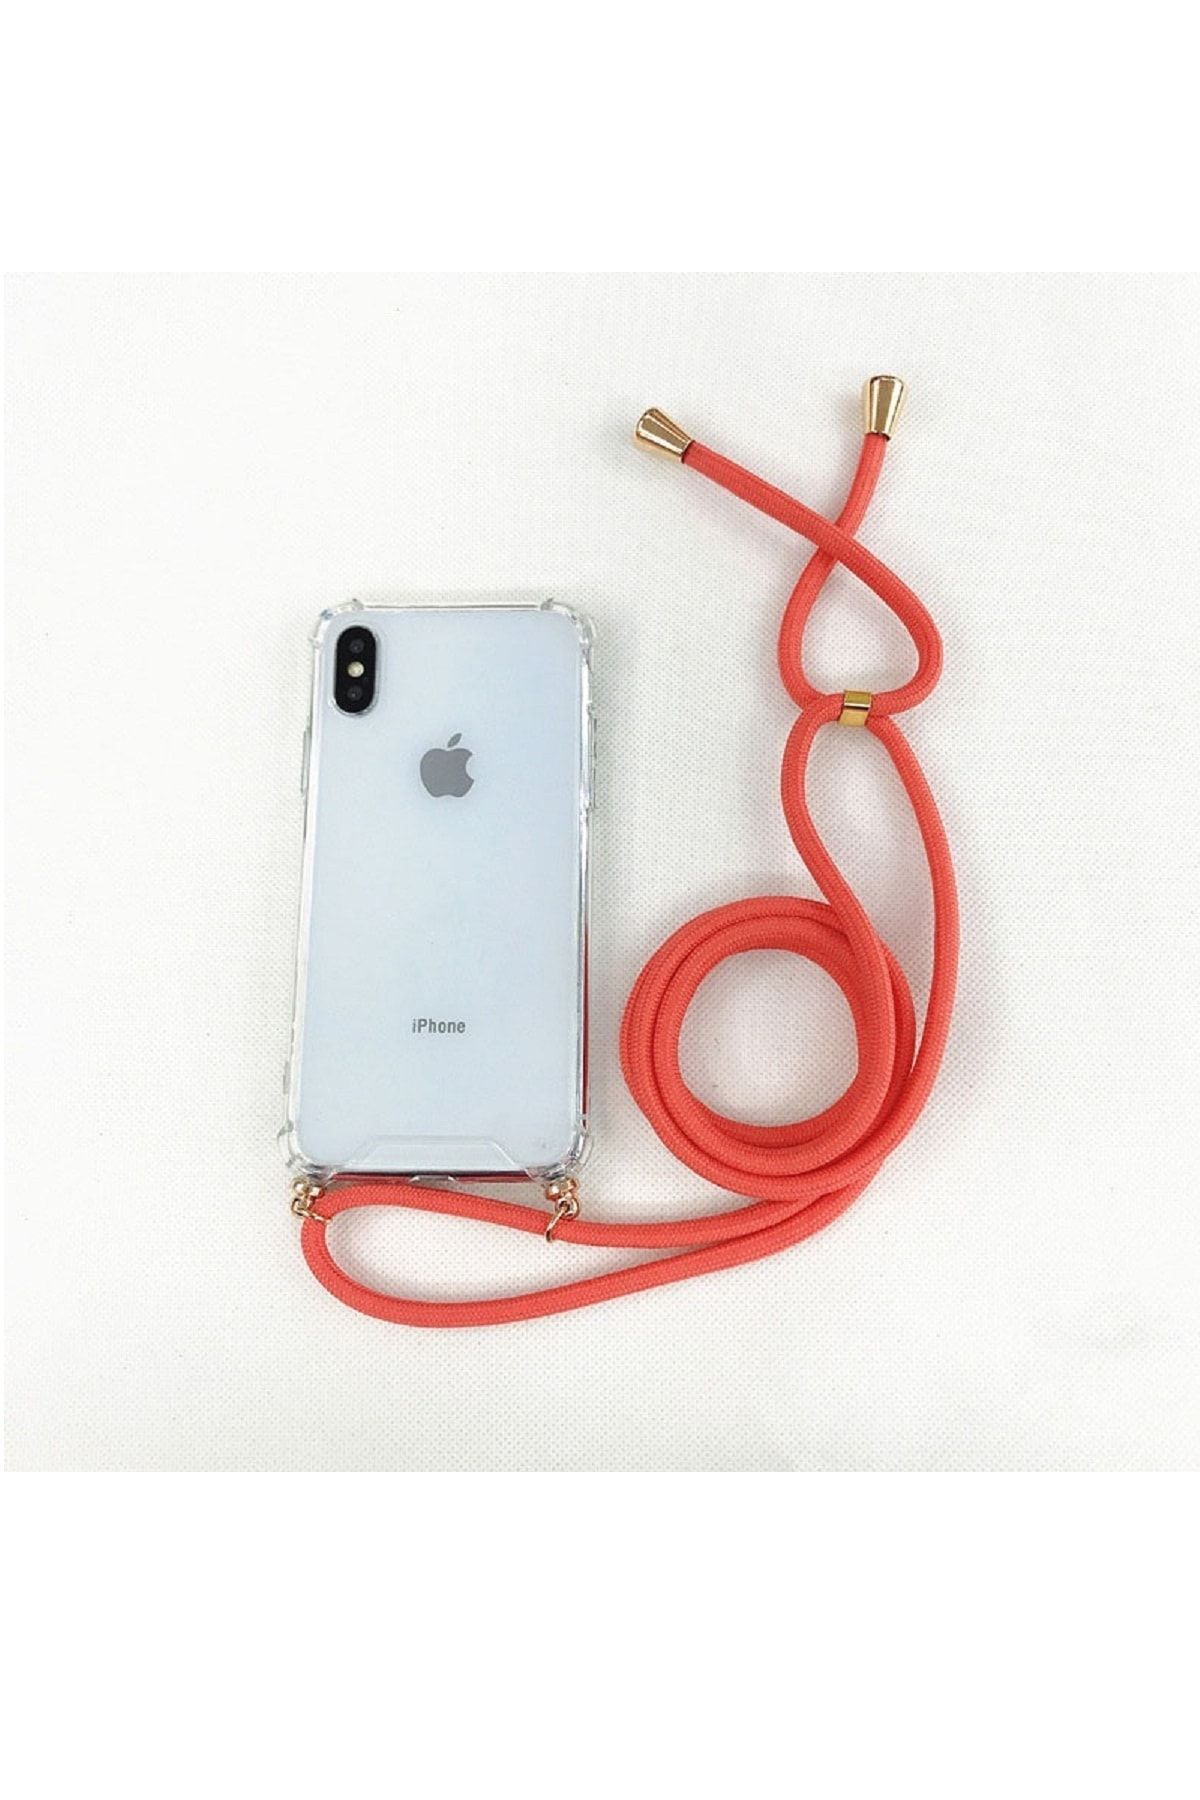 Ilqara Unisex Kırmızı Askılı Kılıf-iPhone 7/8 plus  44KAK78